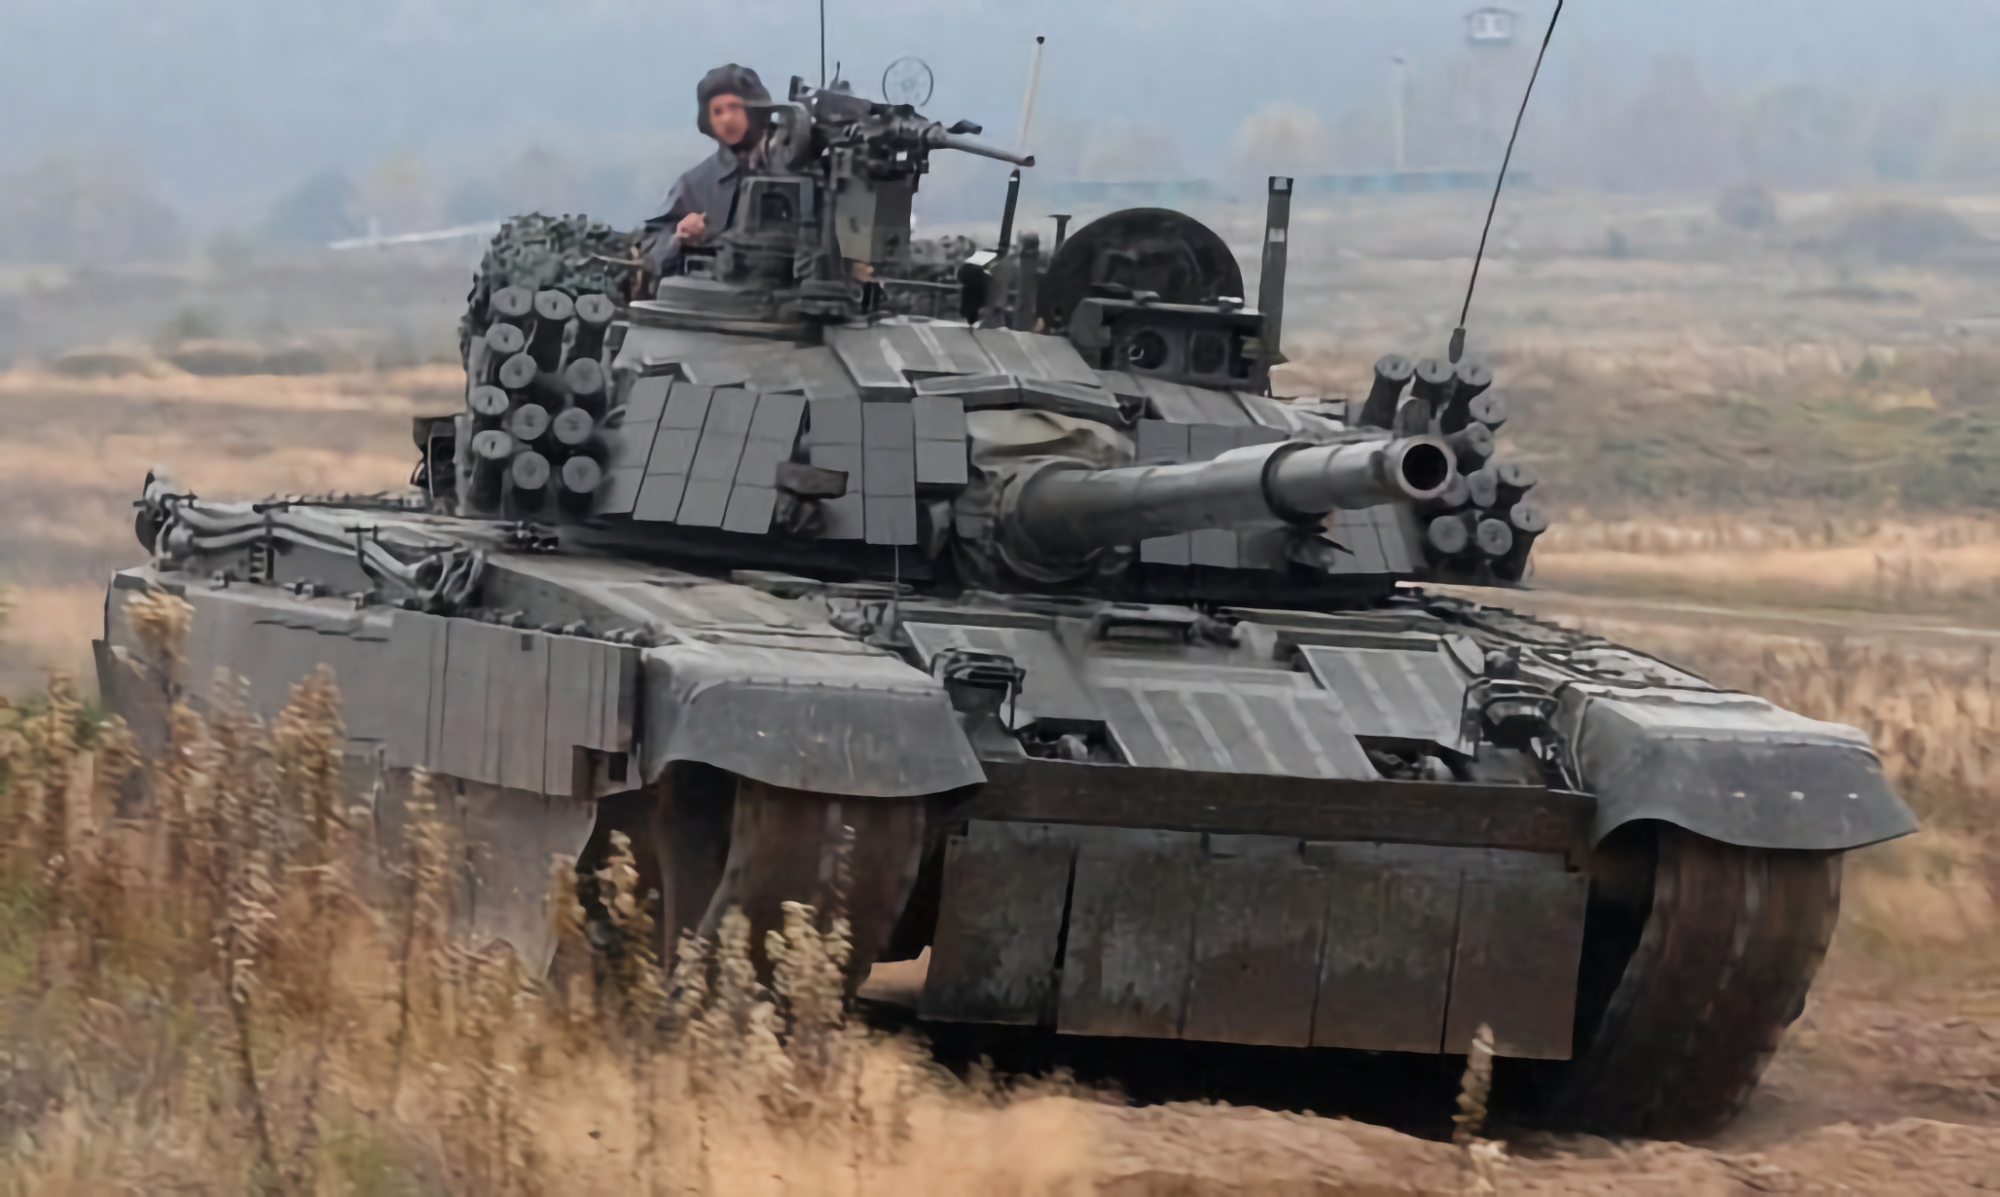 Oryx: Polen liefert 60 PT-91 Twardy-Panzer an die Ukraine